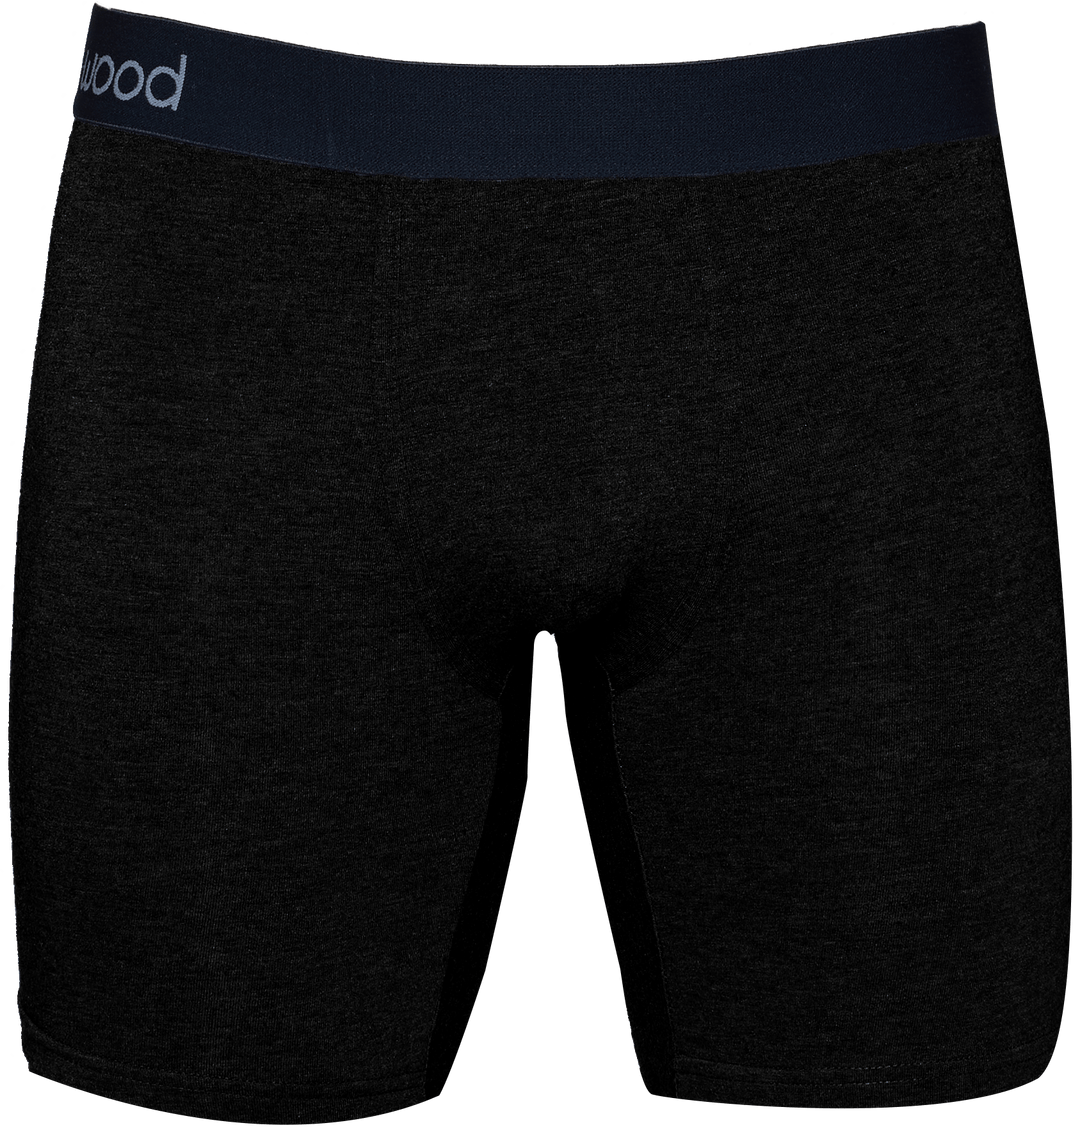 Wood Underwear mens underwear Black with Fly / XL Wood Biker Brief